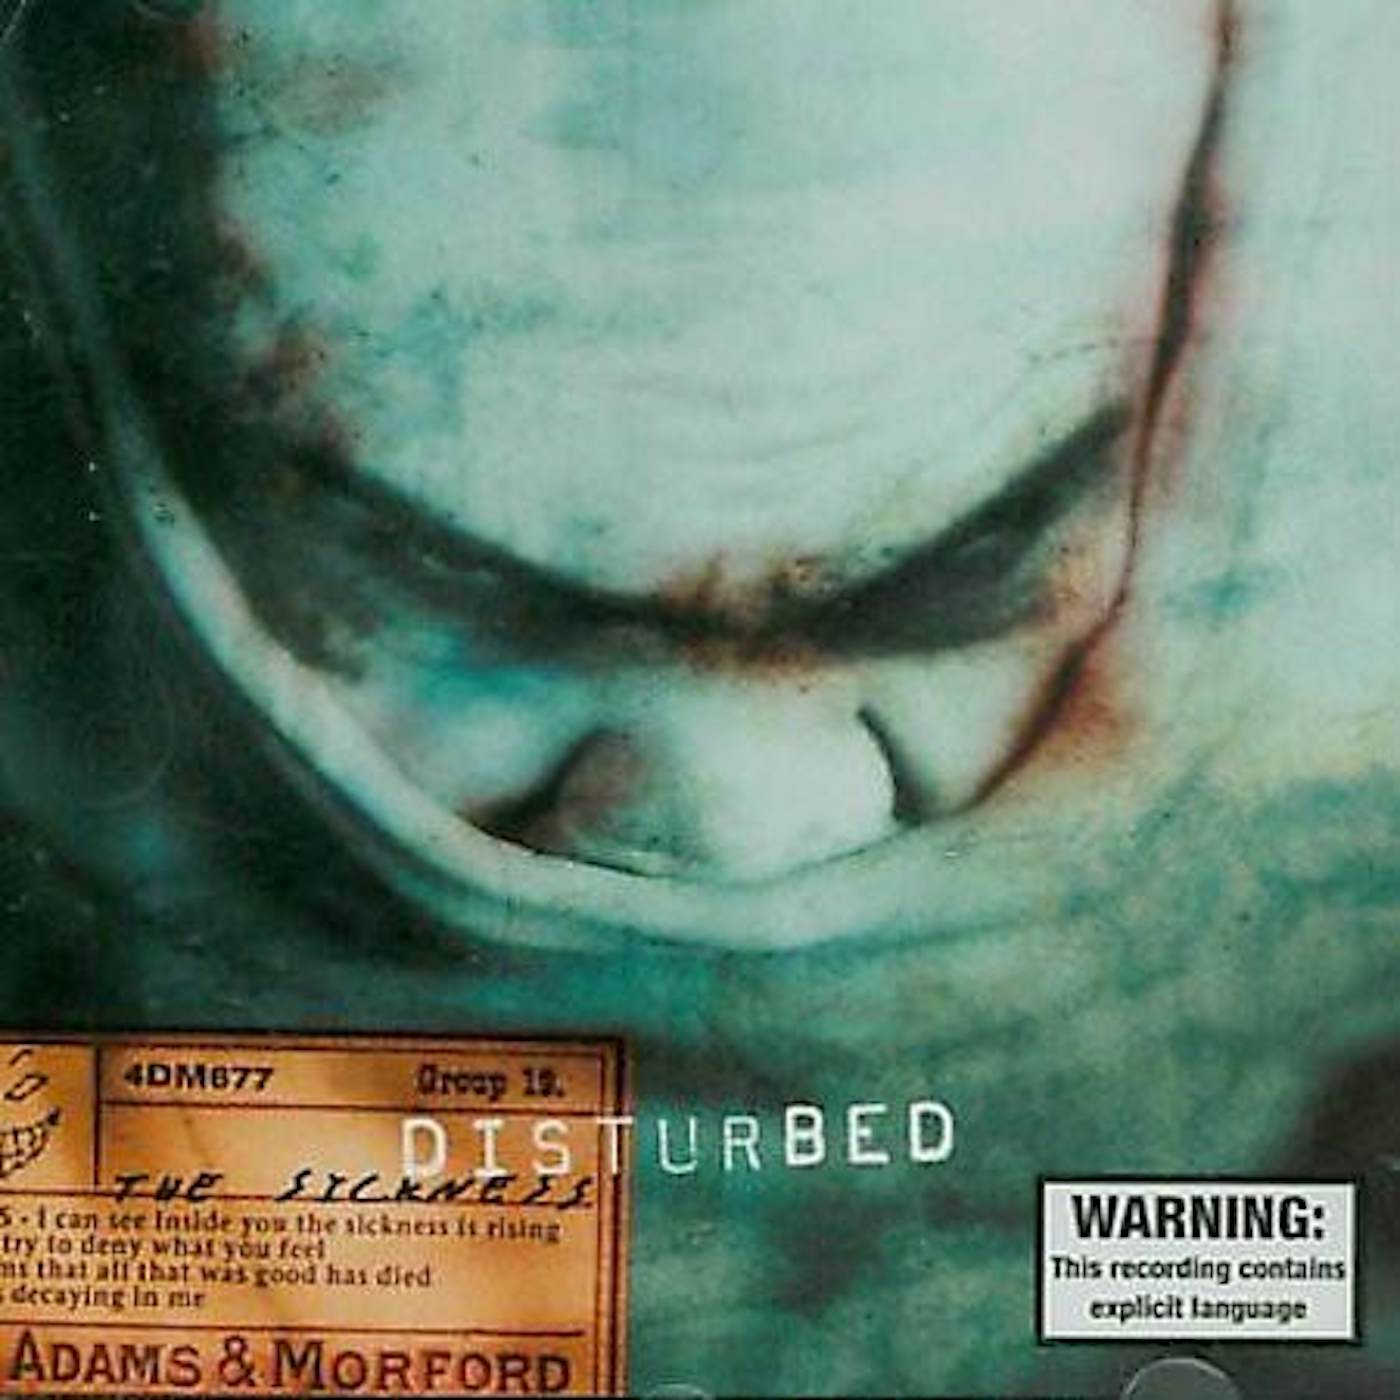 Disturbed SICKNESS CD